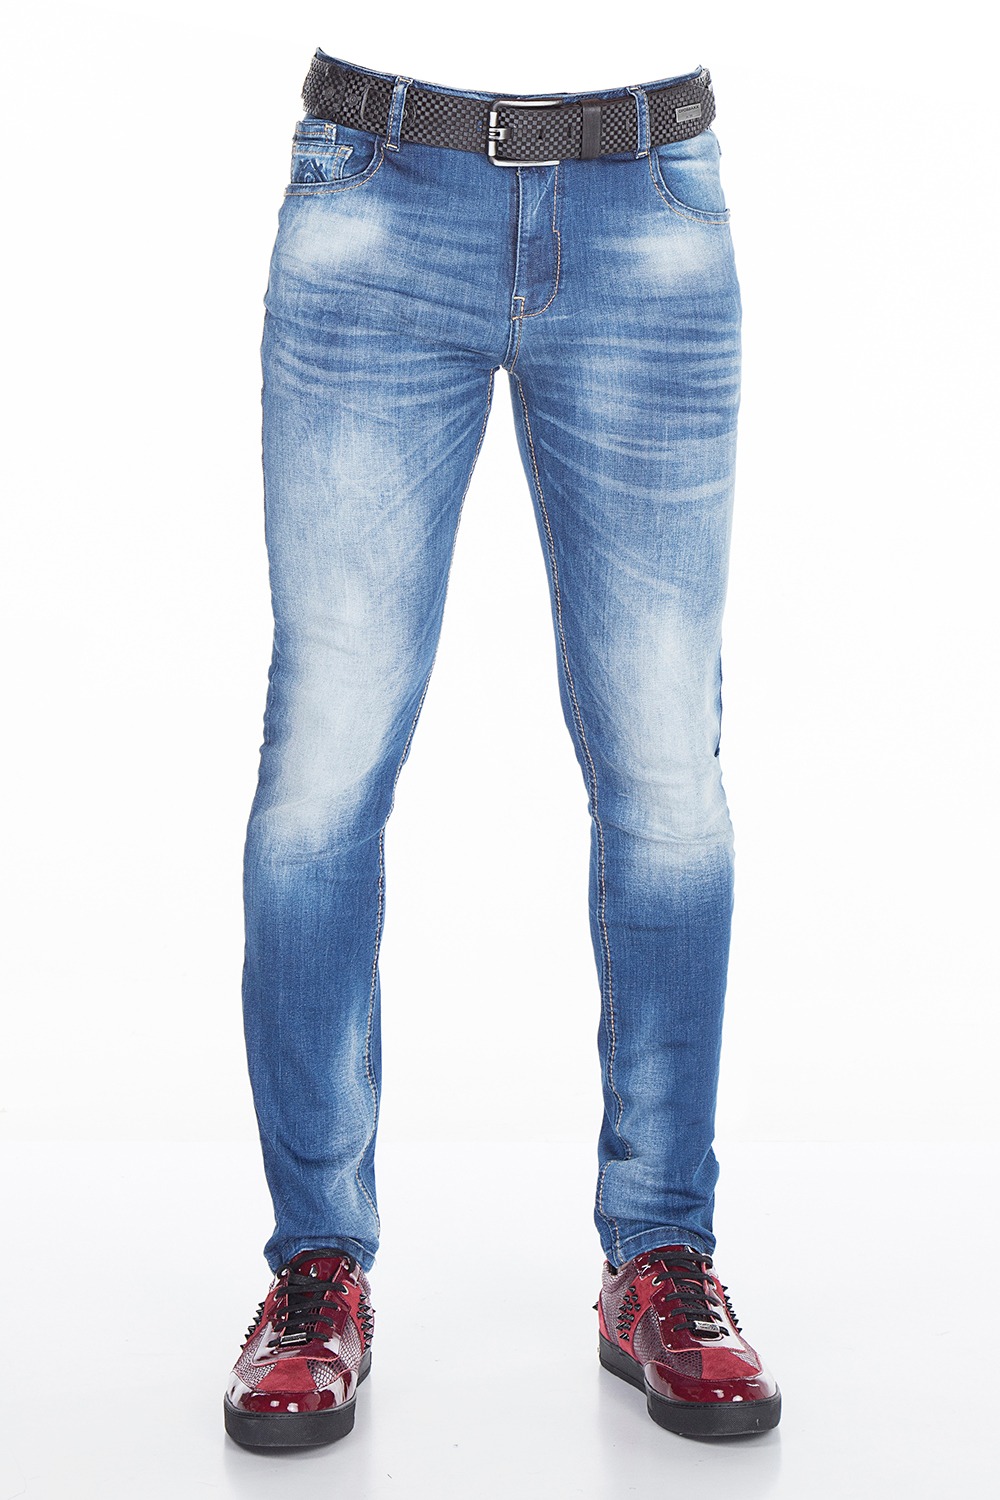 Jeans Comfort Cipo & Baxx  % Scontati 20 % Per Covid